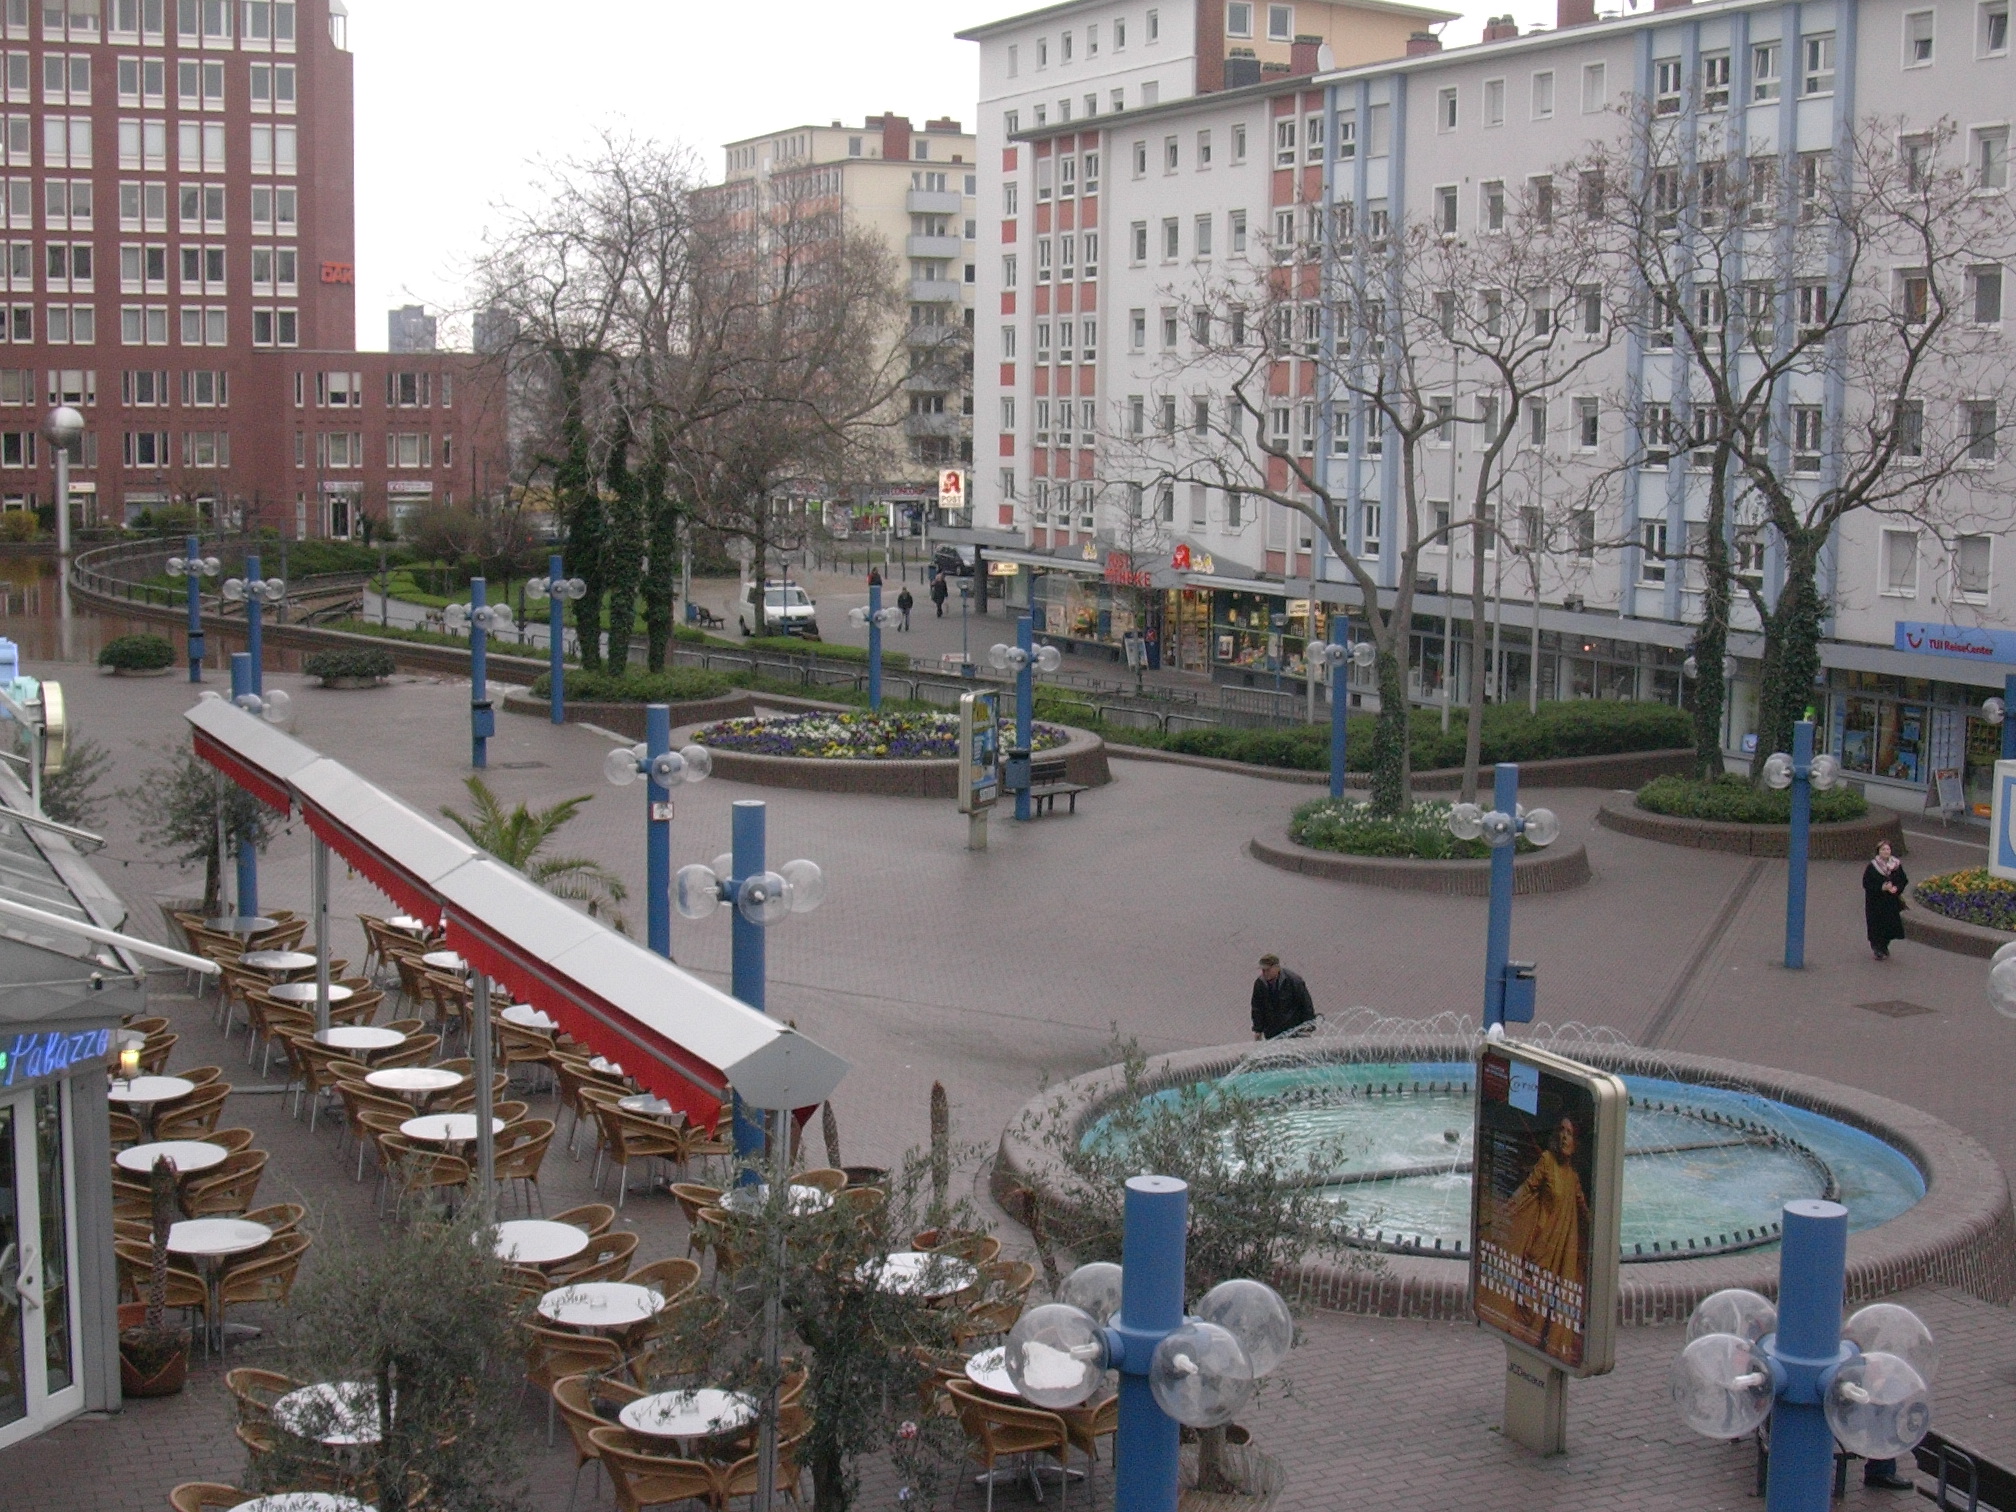 Datei:Ludwigshafen Rathausplatz 01.jpg